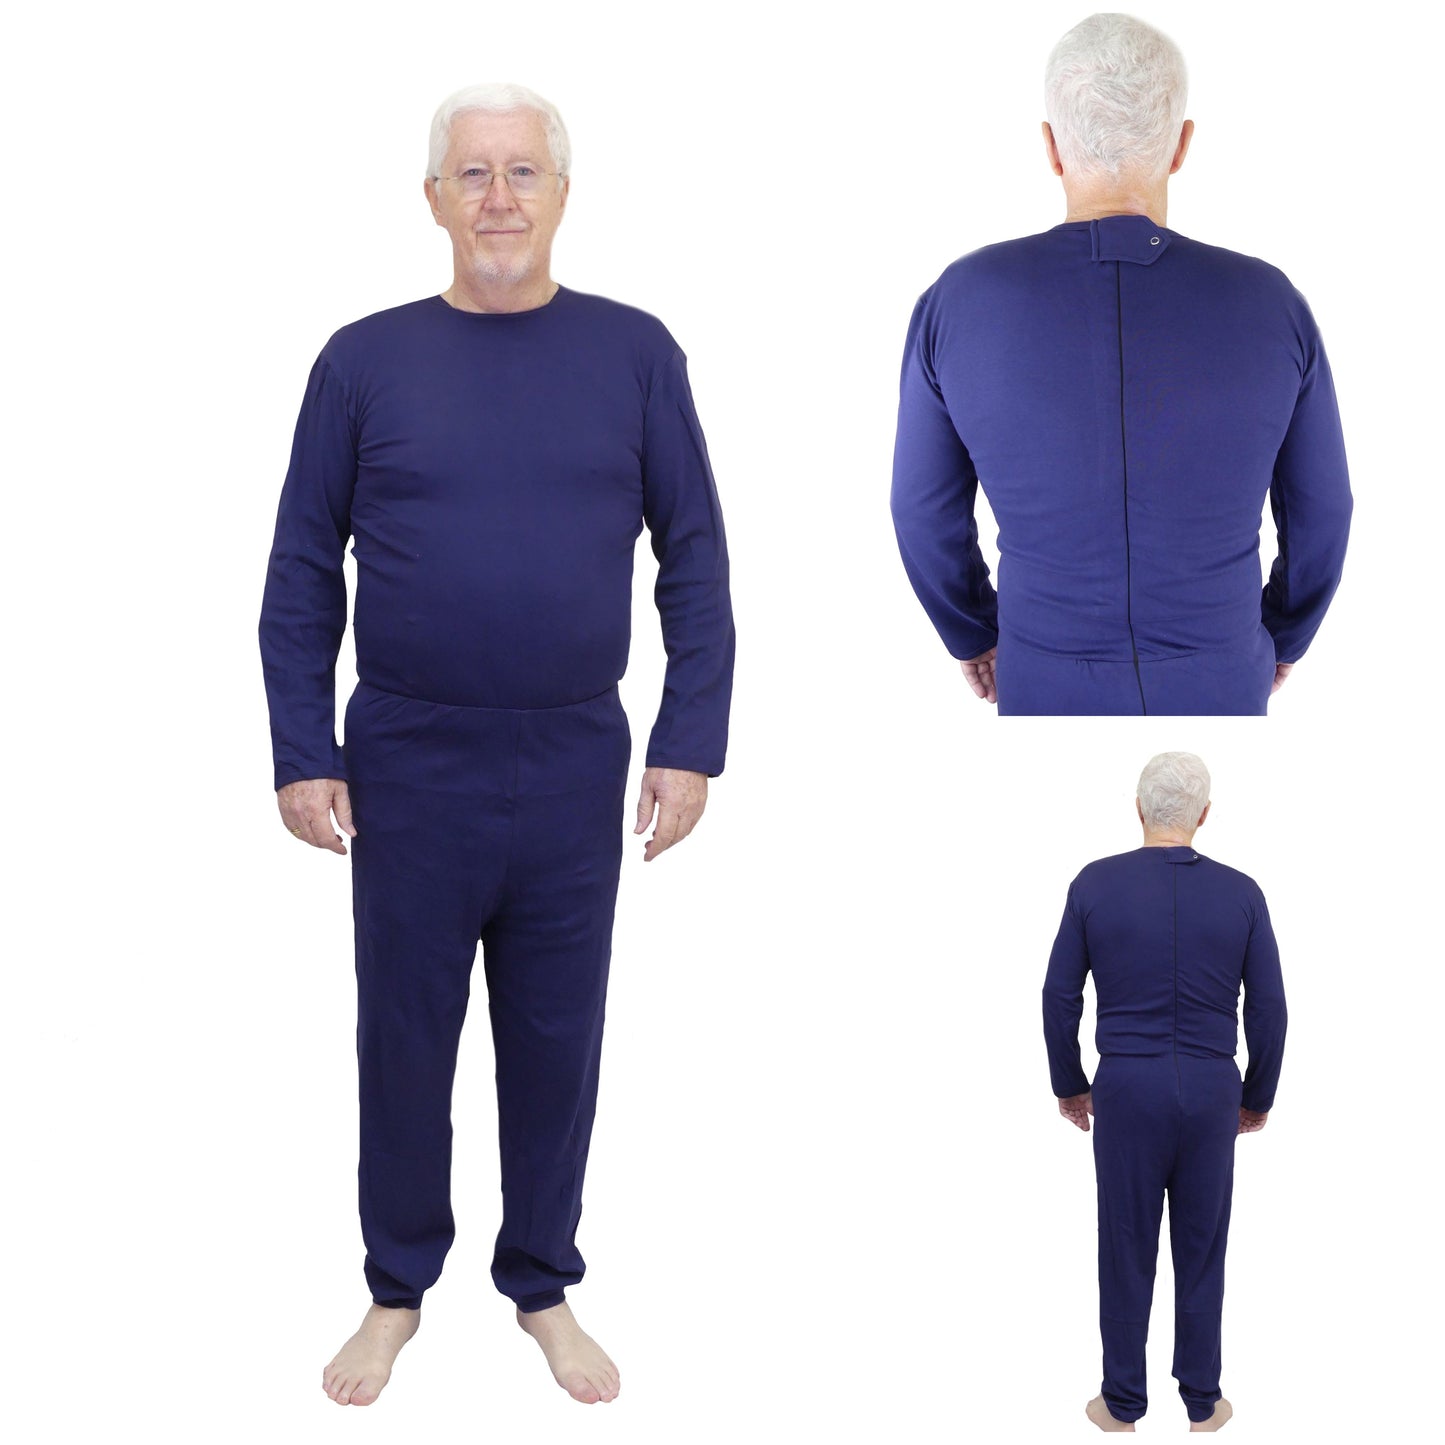 Men's Adaptive Nightwear: All-in-One Pyjamas with Long Sleeves - M146 - MEDORIS